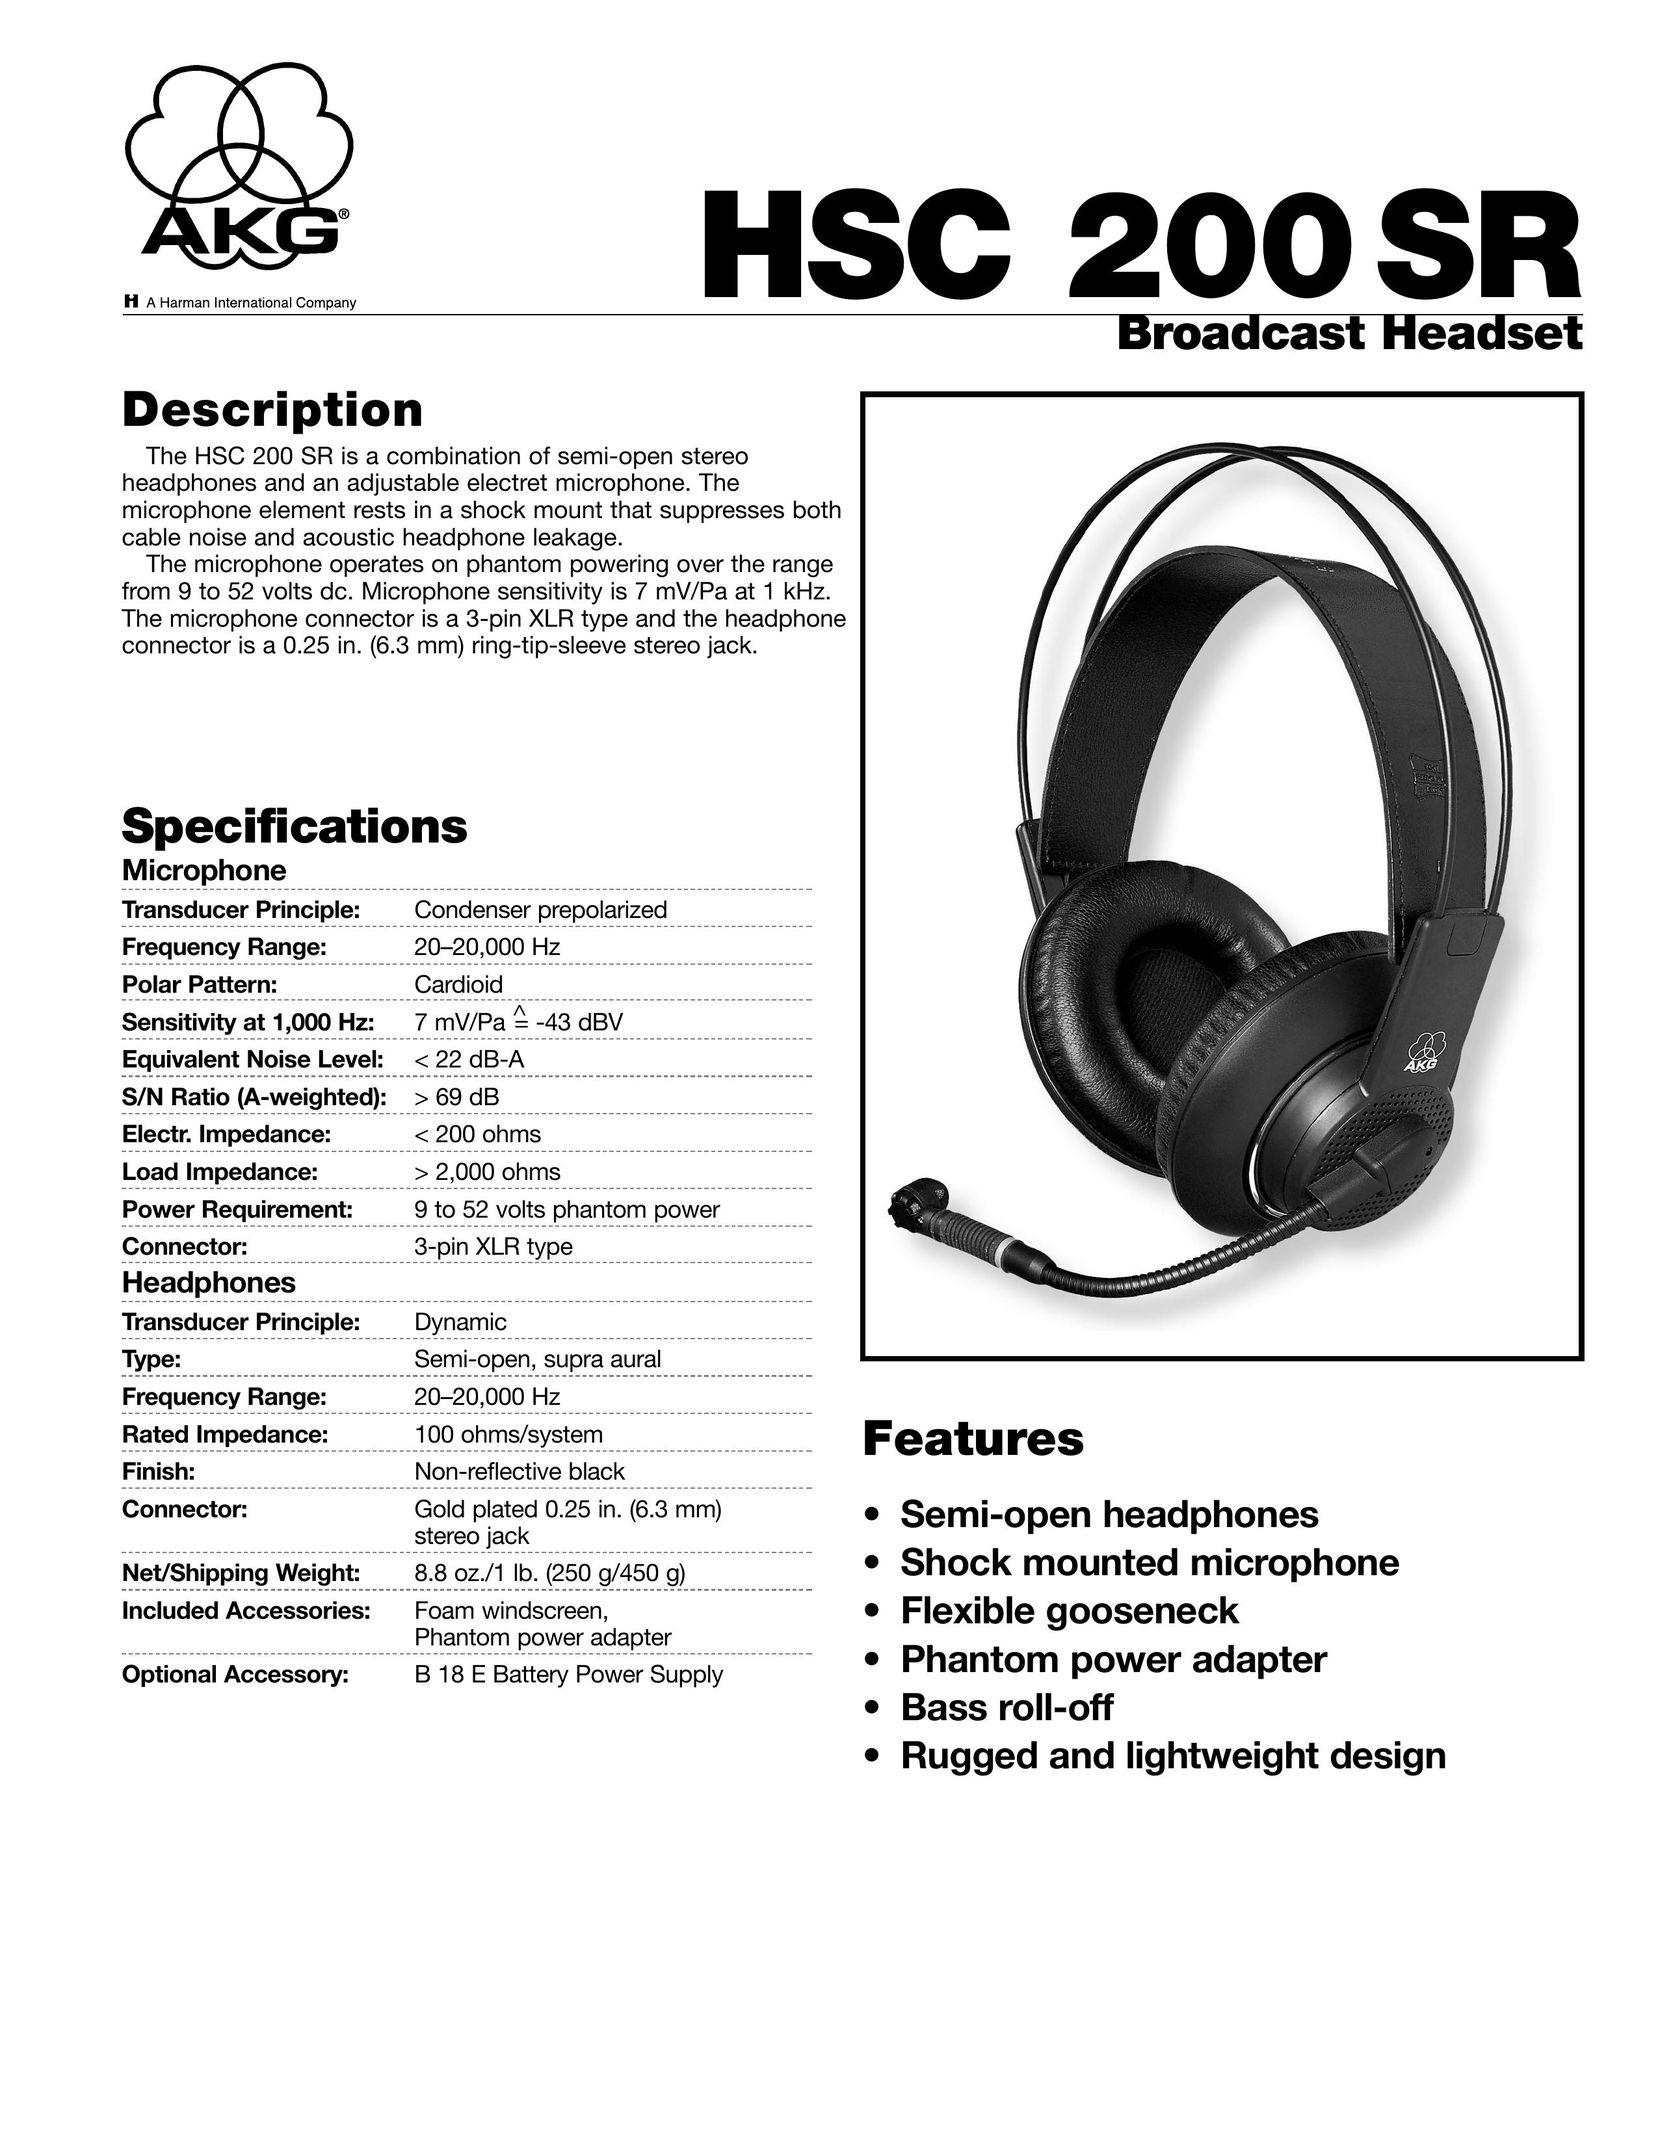 AKG Acoustics HSC 200 SR Headphones User Manual (Page 1)